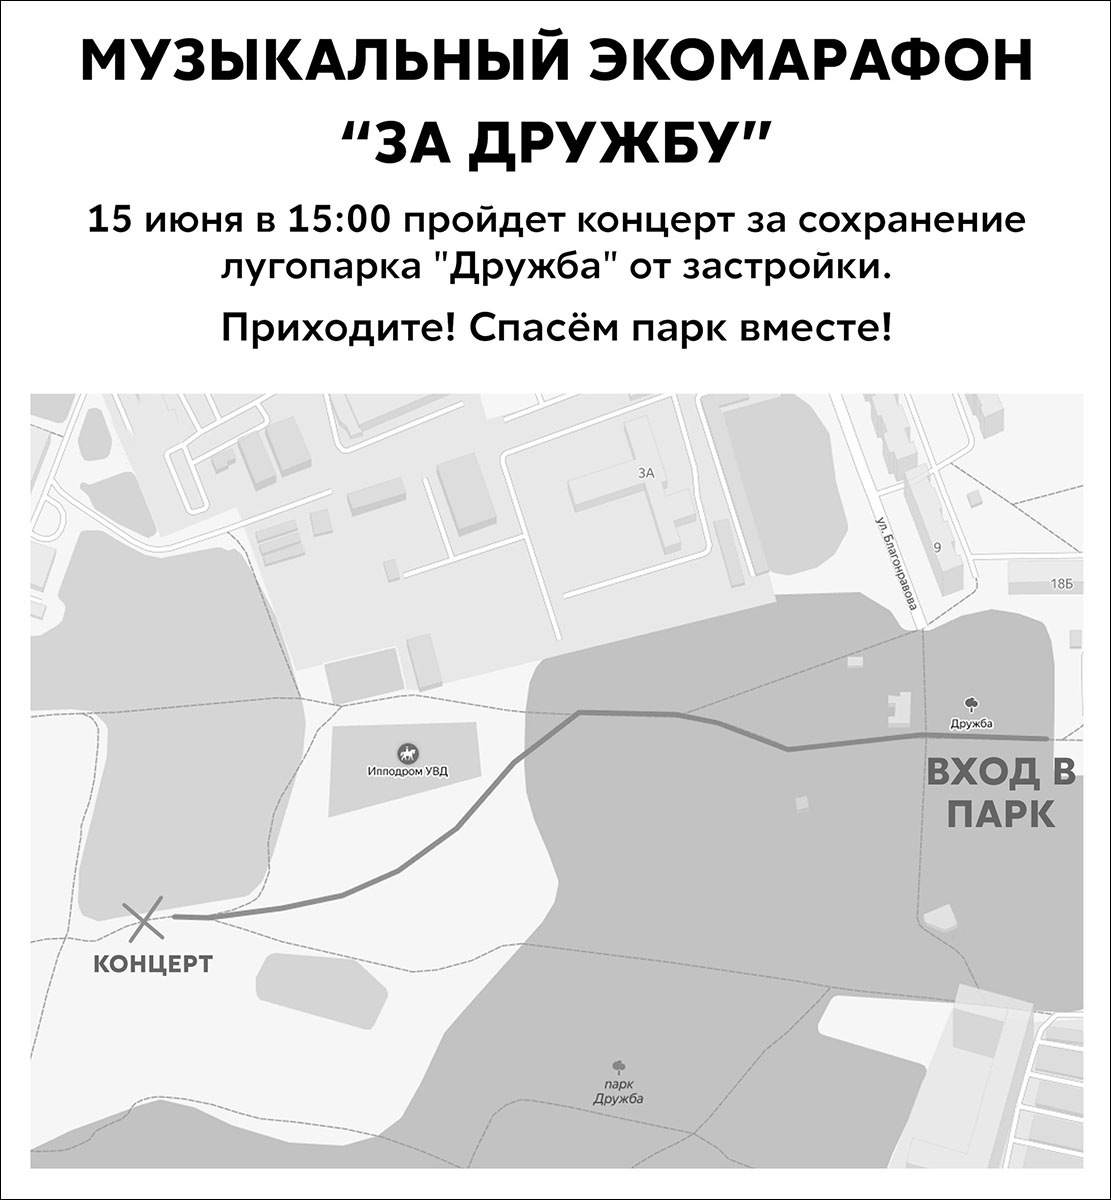 15 июня на лугу у парка “Дружба” состоится музыкальный экомарафон. Владимирские группы устроят концерт, чтобы защитить территорию от застройки.